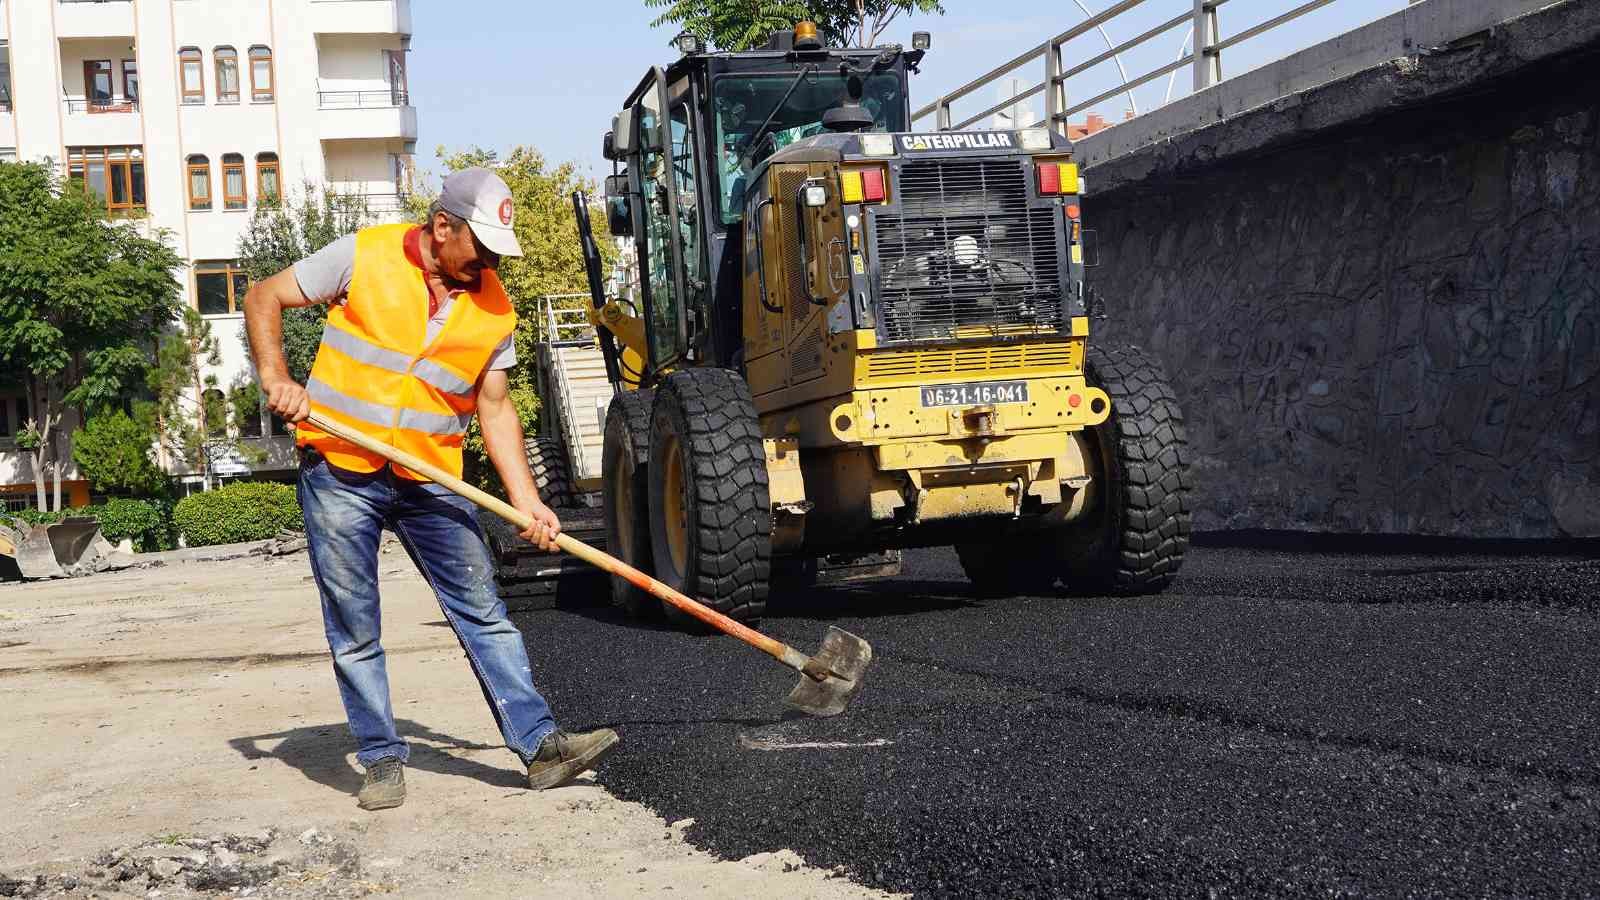 Keçiören belediyesinden rekor asfalt yatırımı #ankara